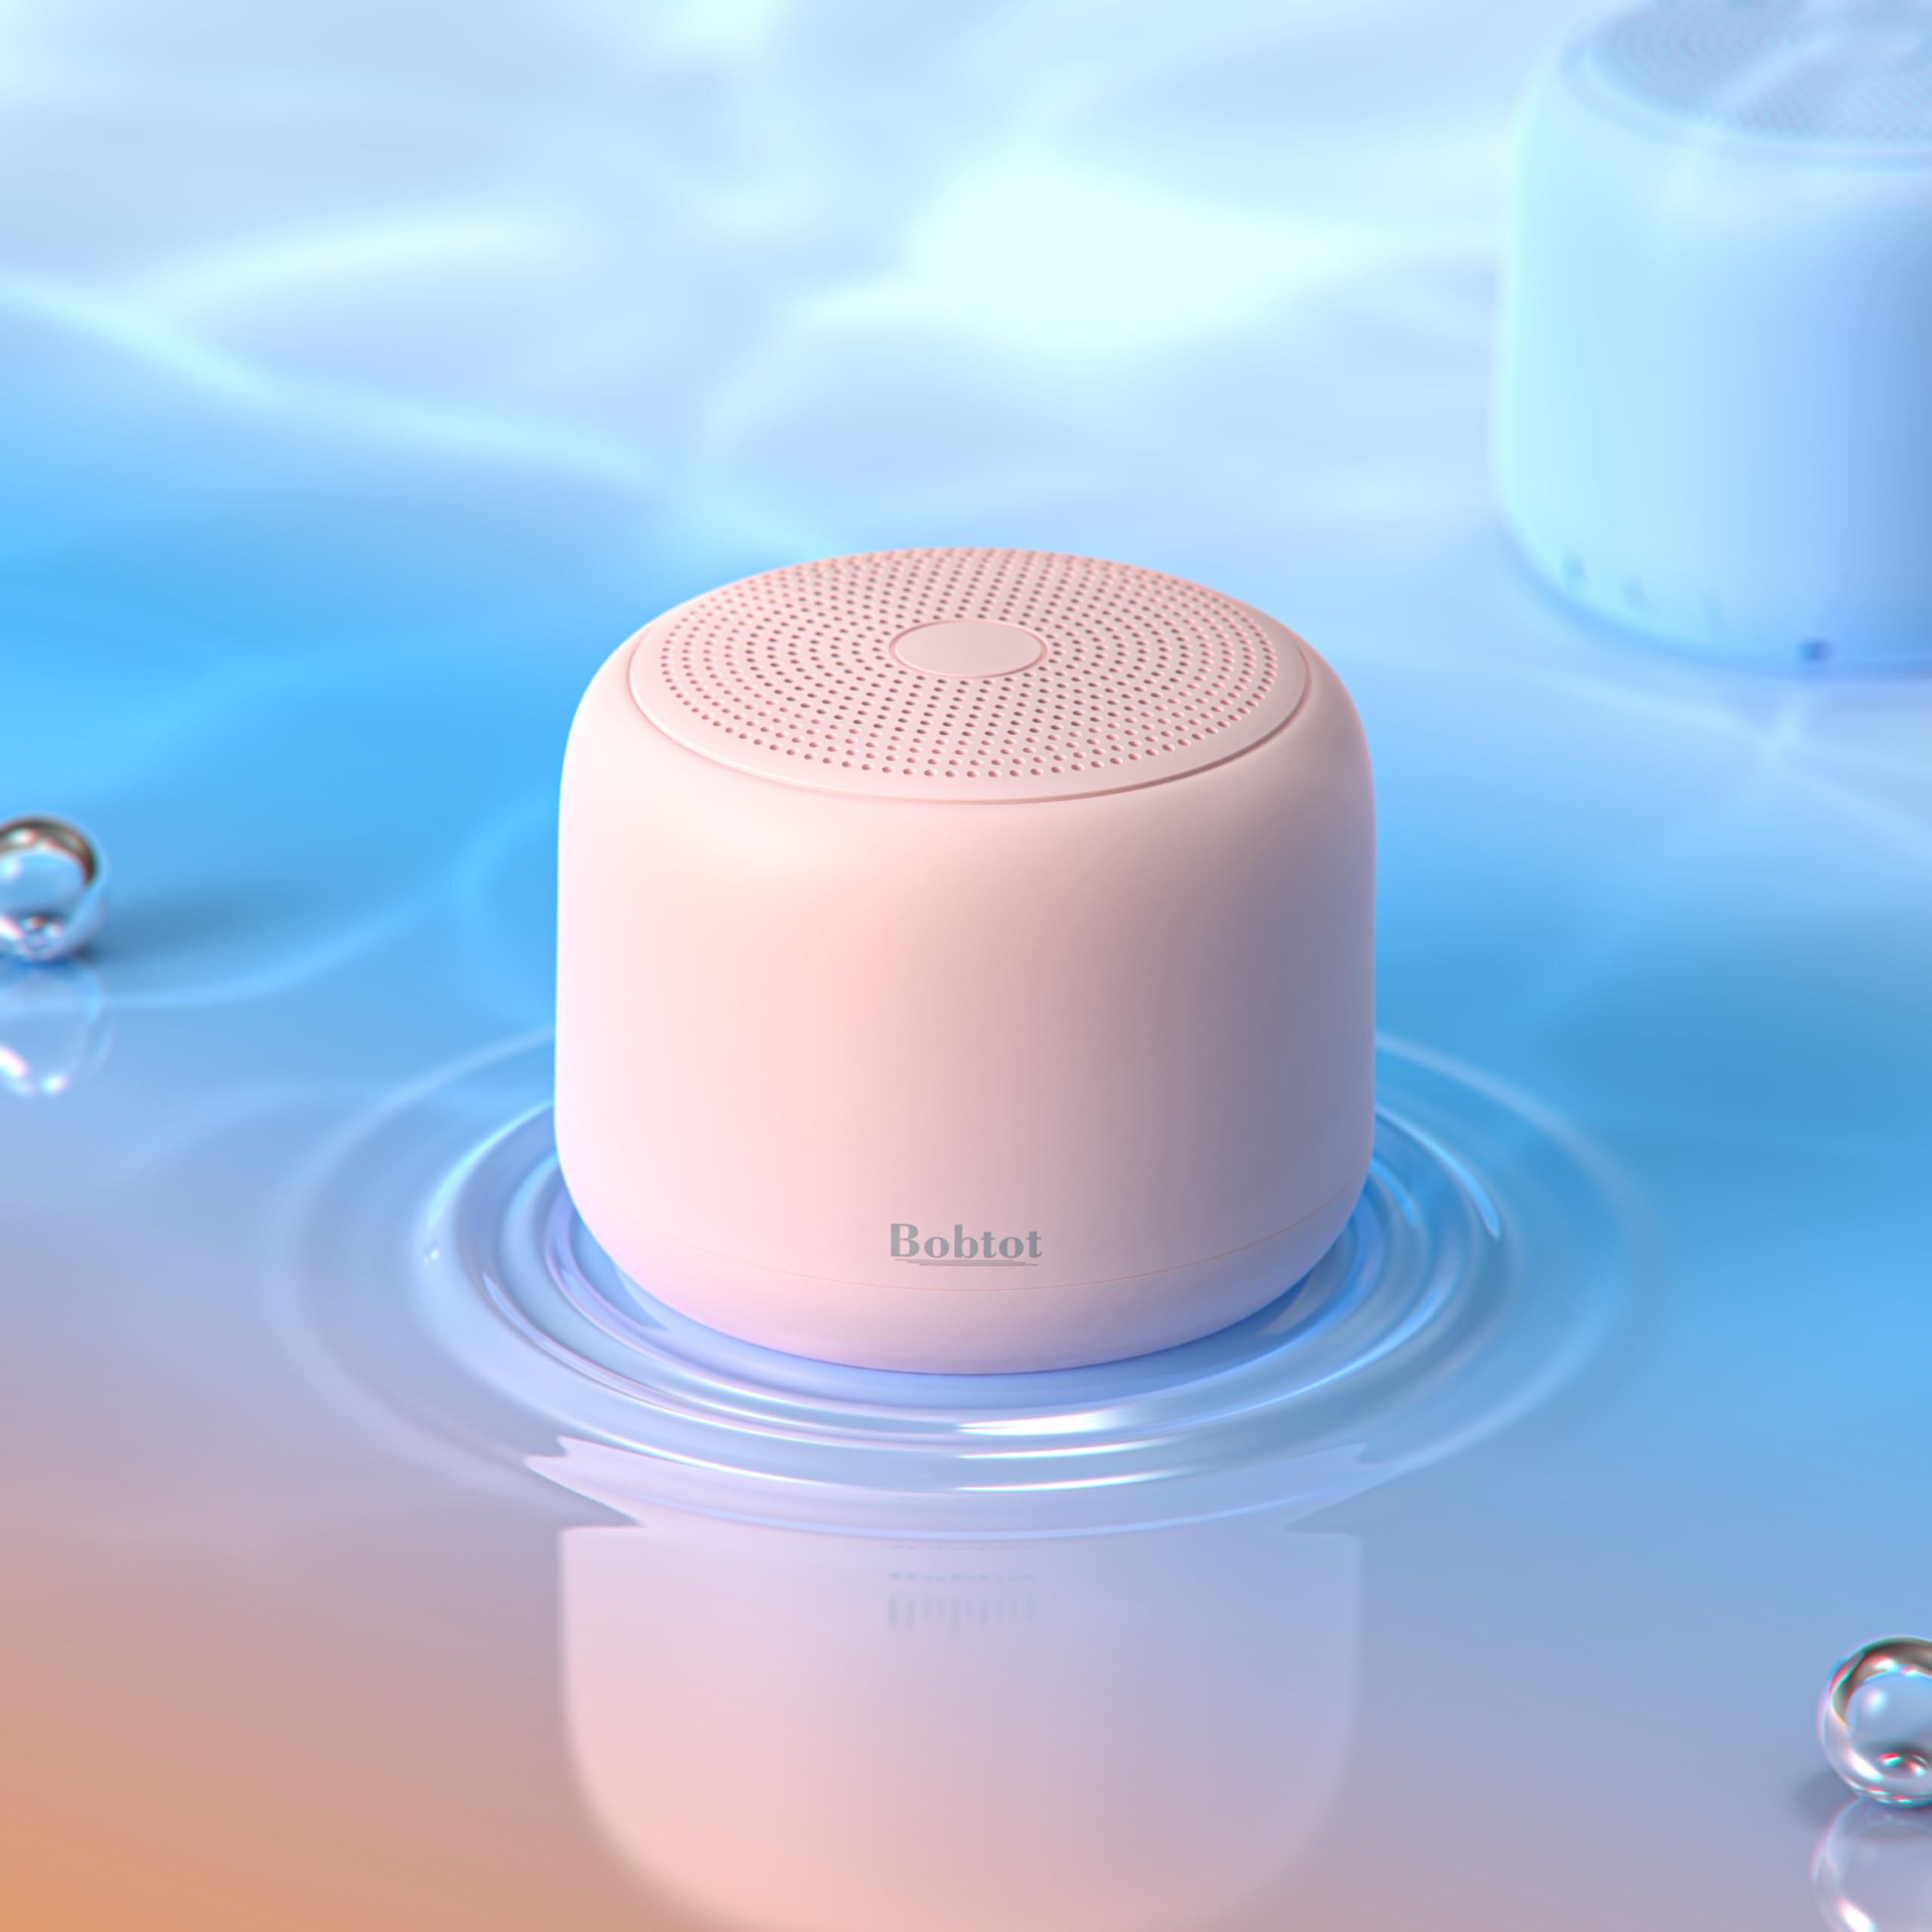 Bobtot Portable Bluetooth Speakers